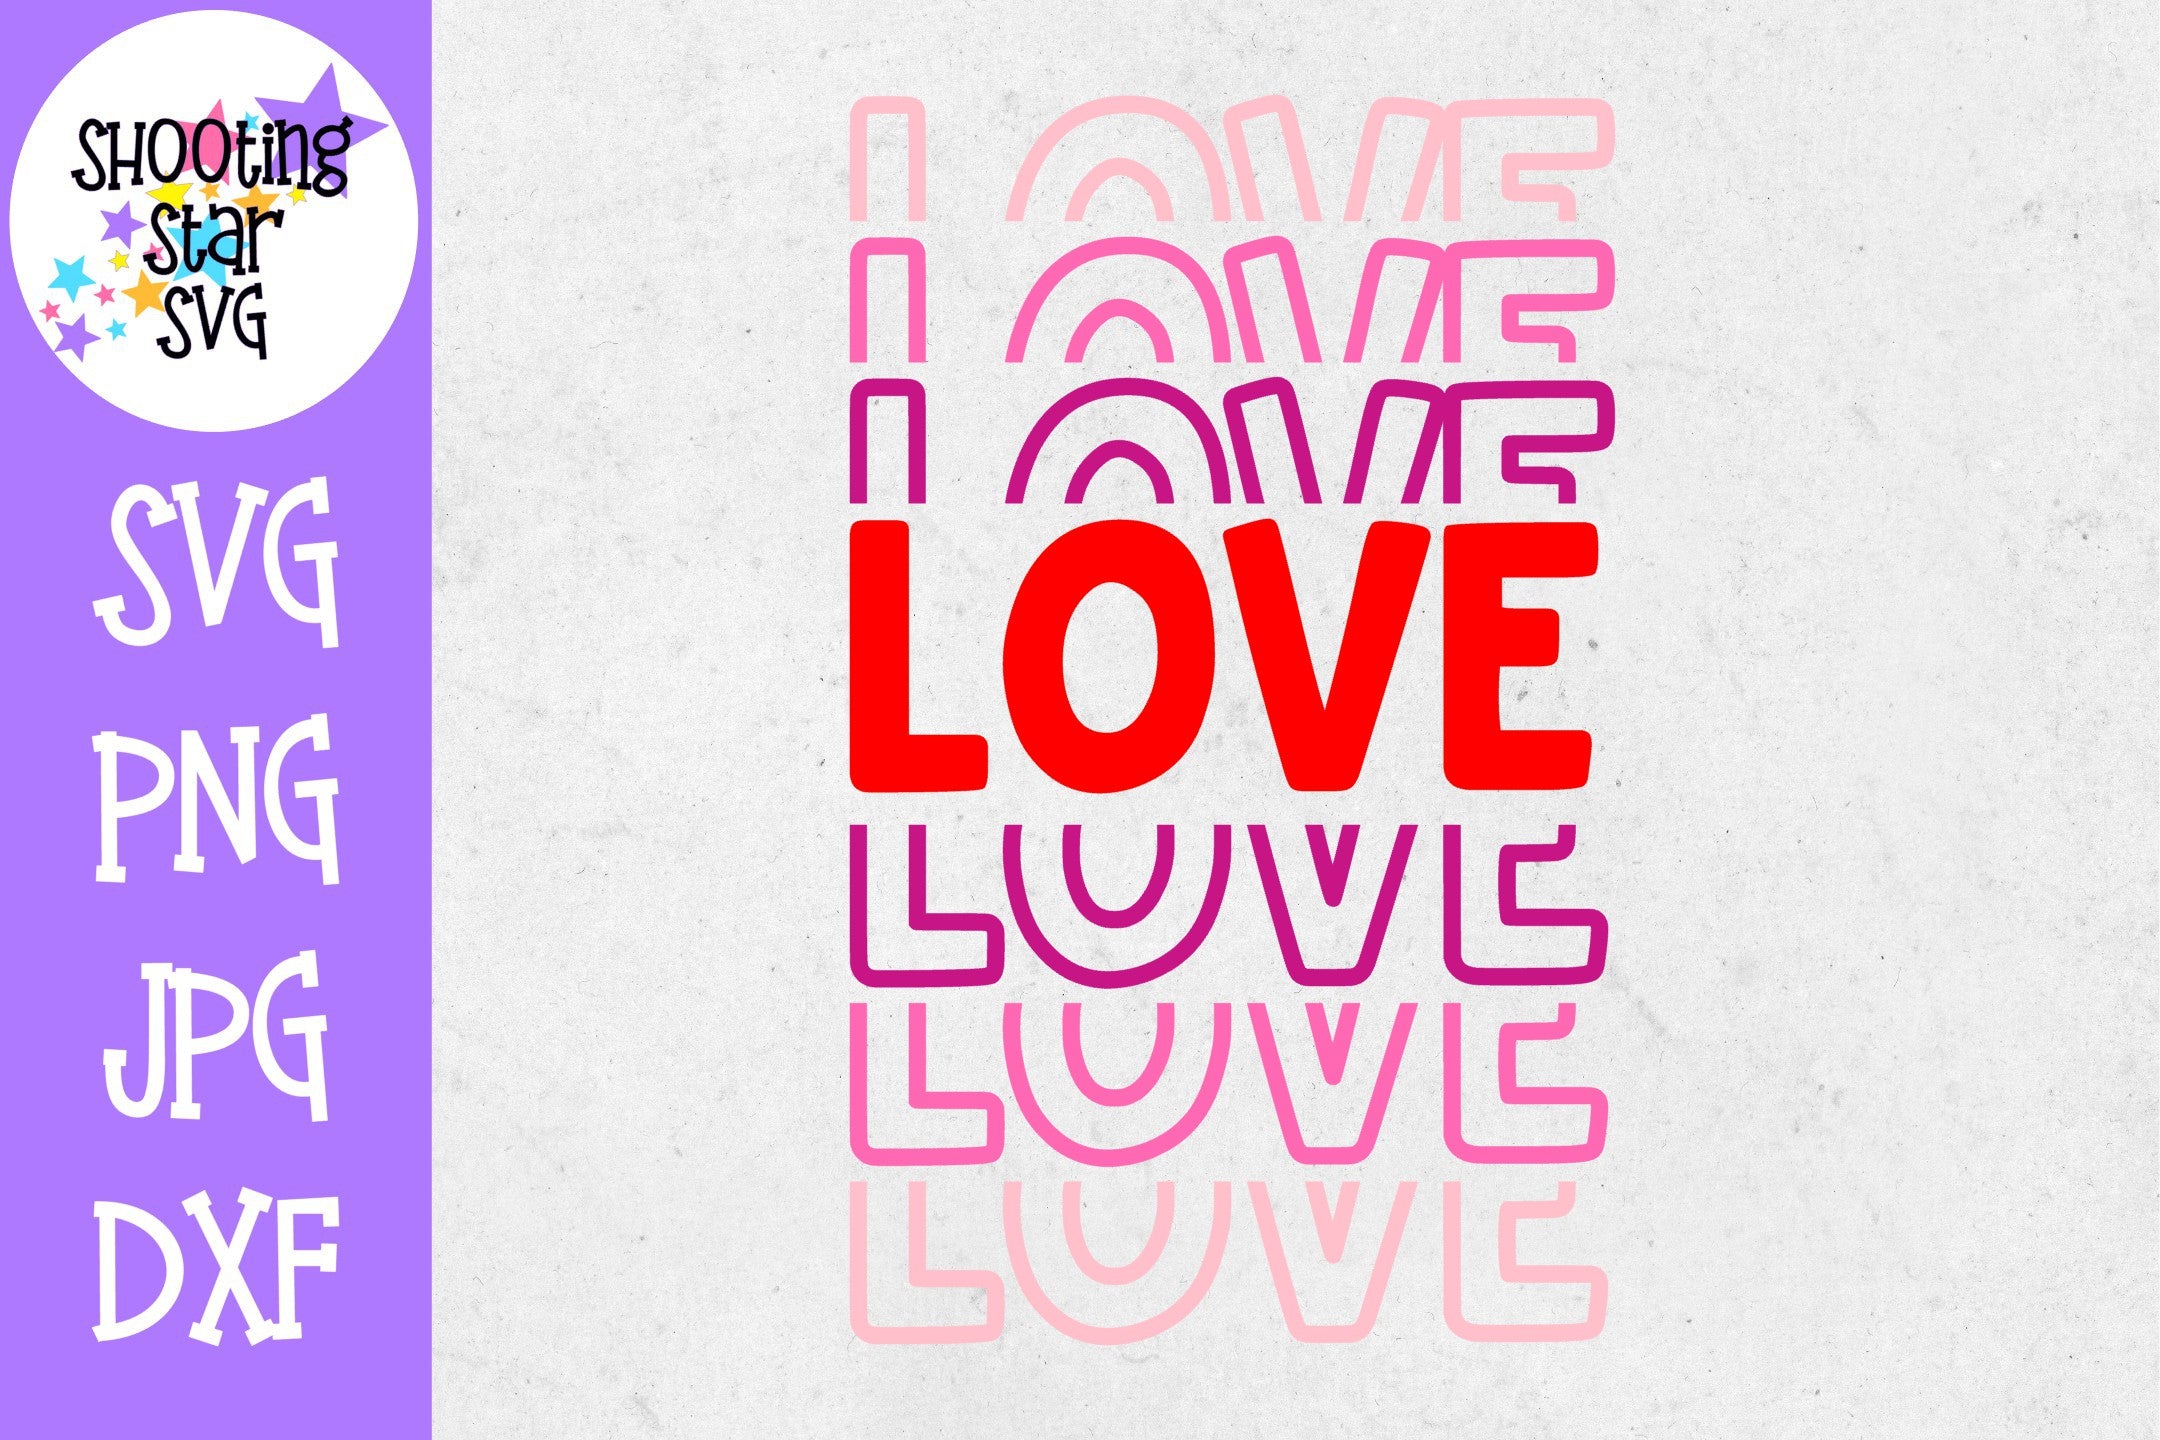 Stacked LOVE SVG - Valentine's Day SVG - Mirrored LOVE SVG